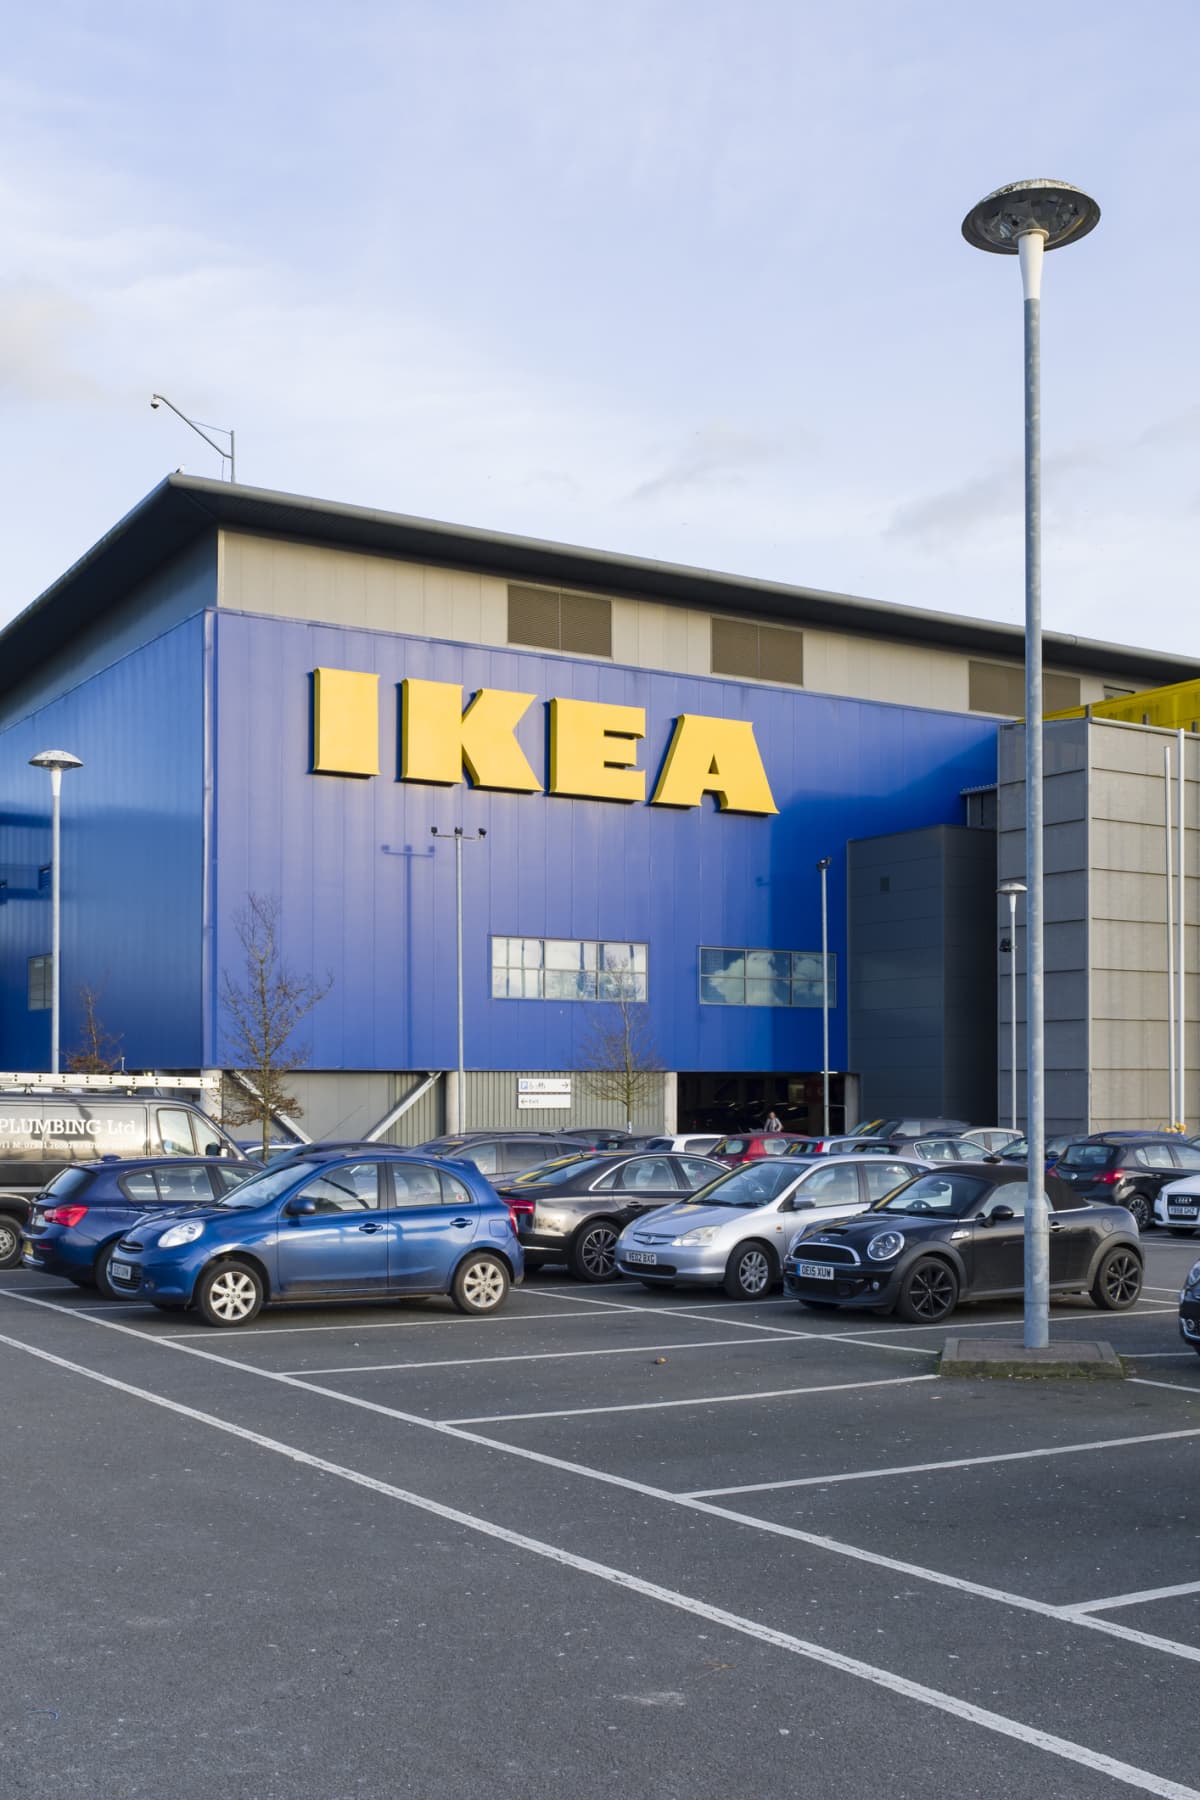 IKEA store parking lot